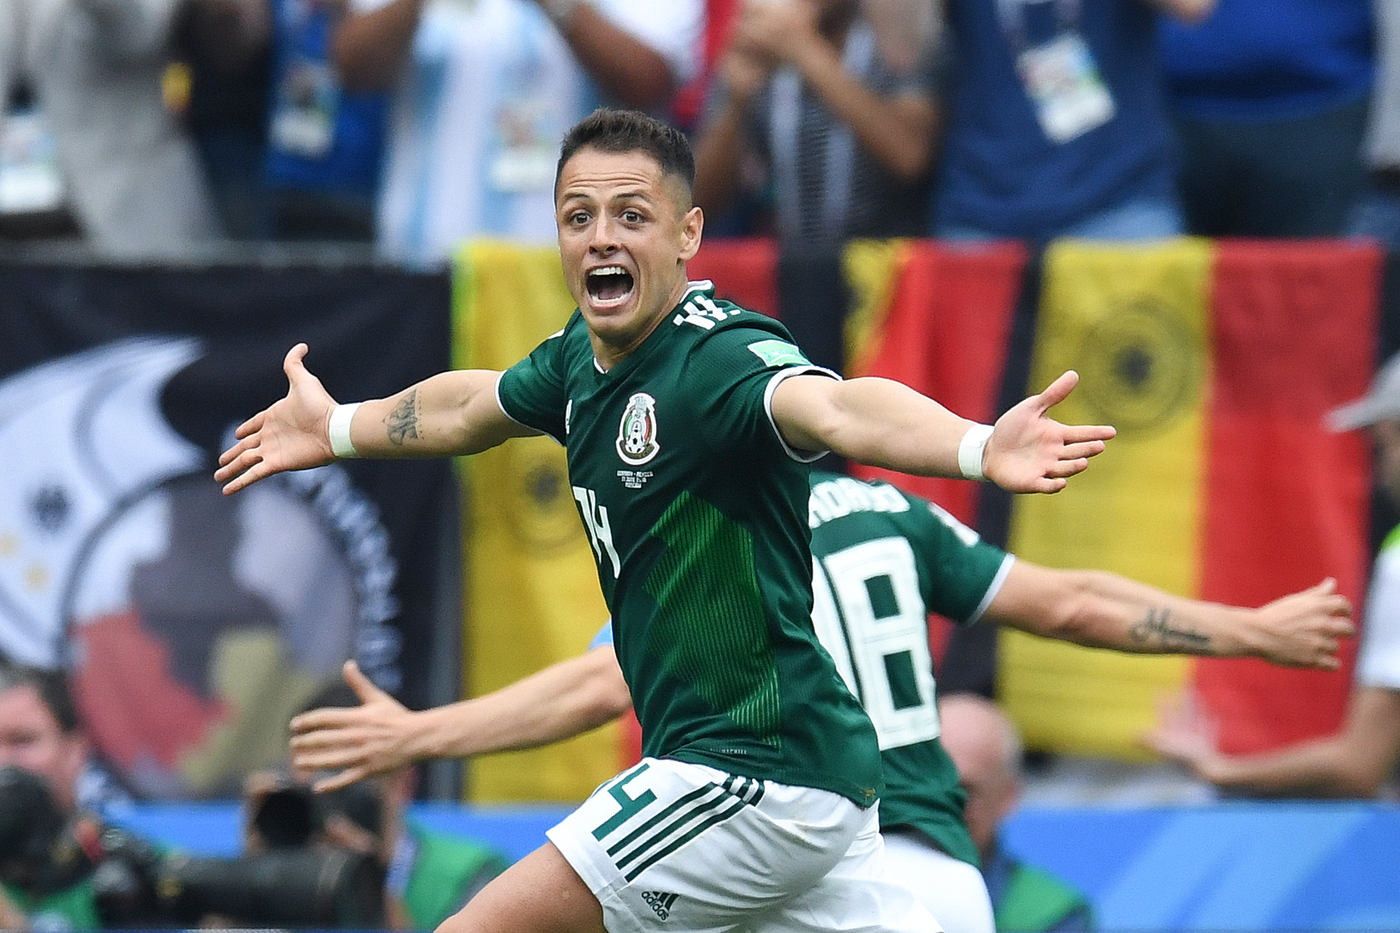 Messico-Costa Rica 12 ottobre: amichevole internazionale tra nazionali di buon livello. I messicani partono favoriti per la vittoria.